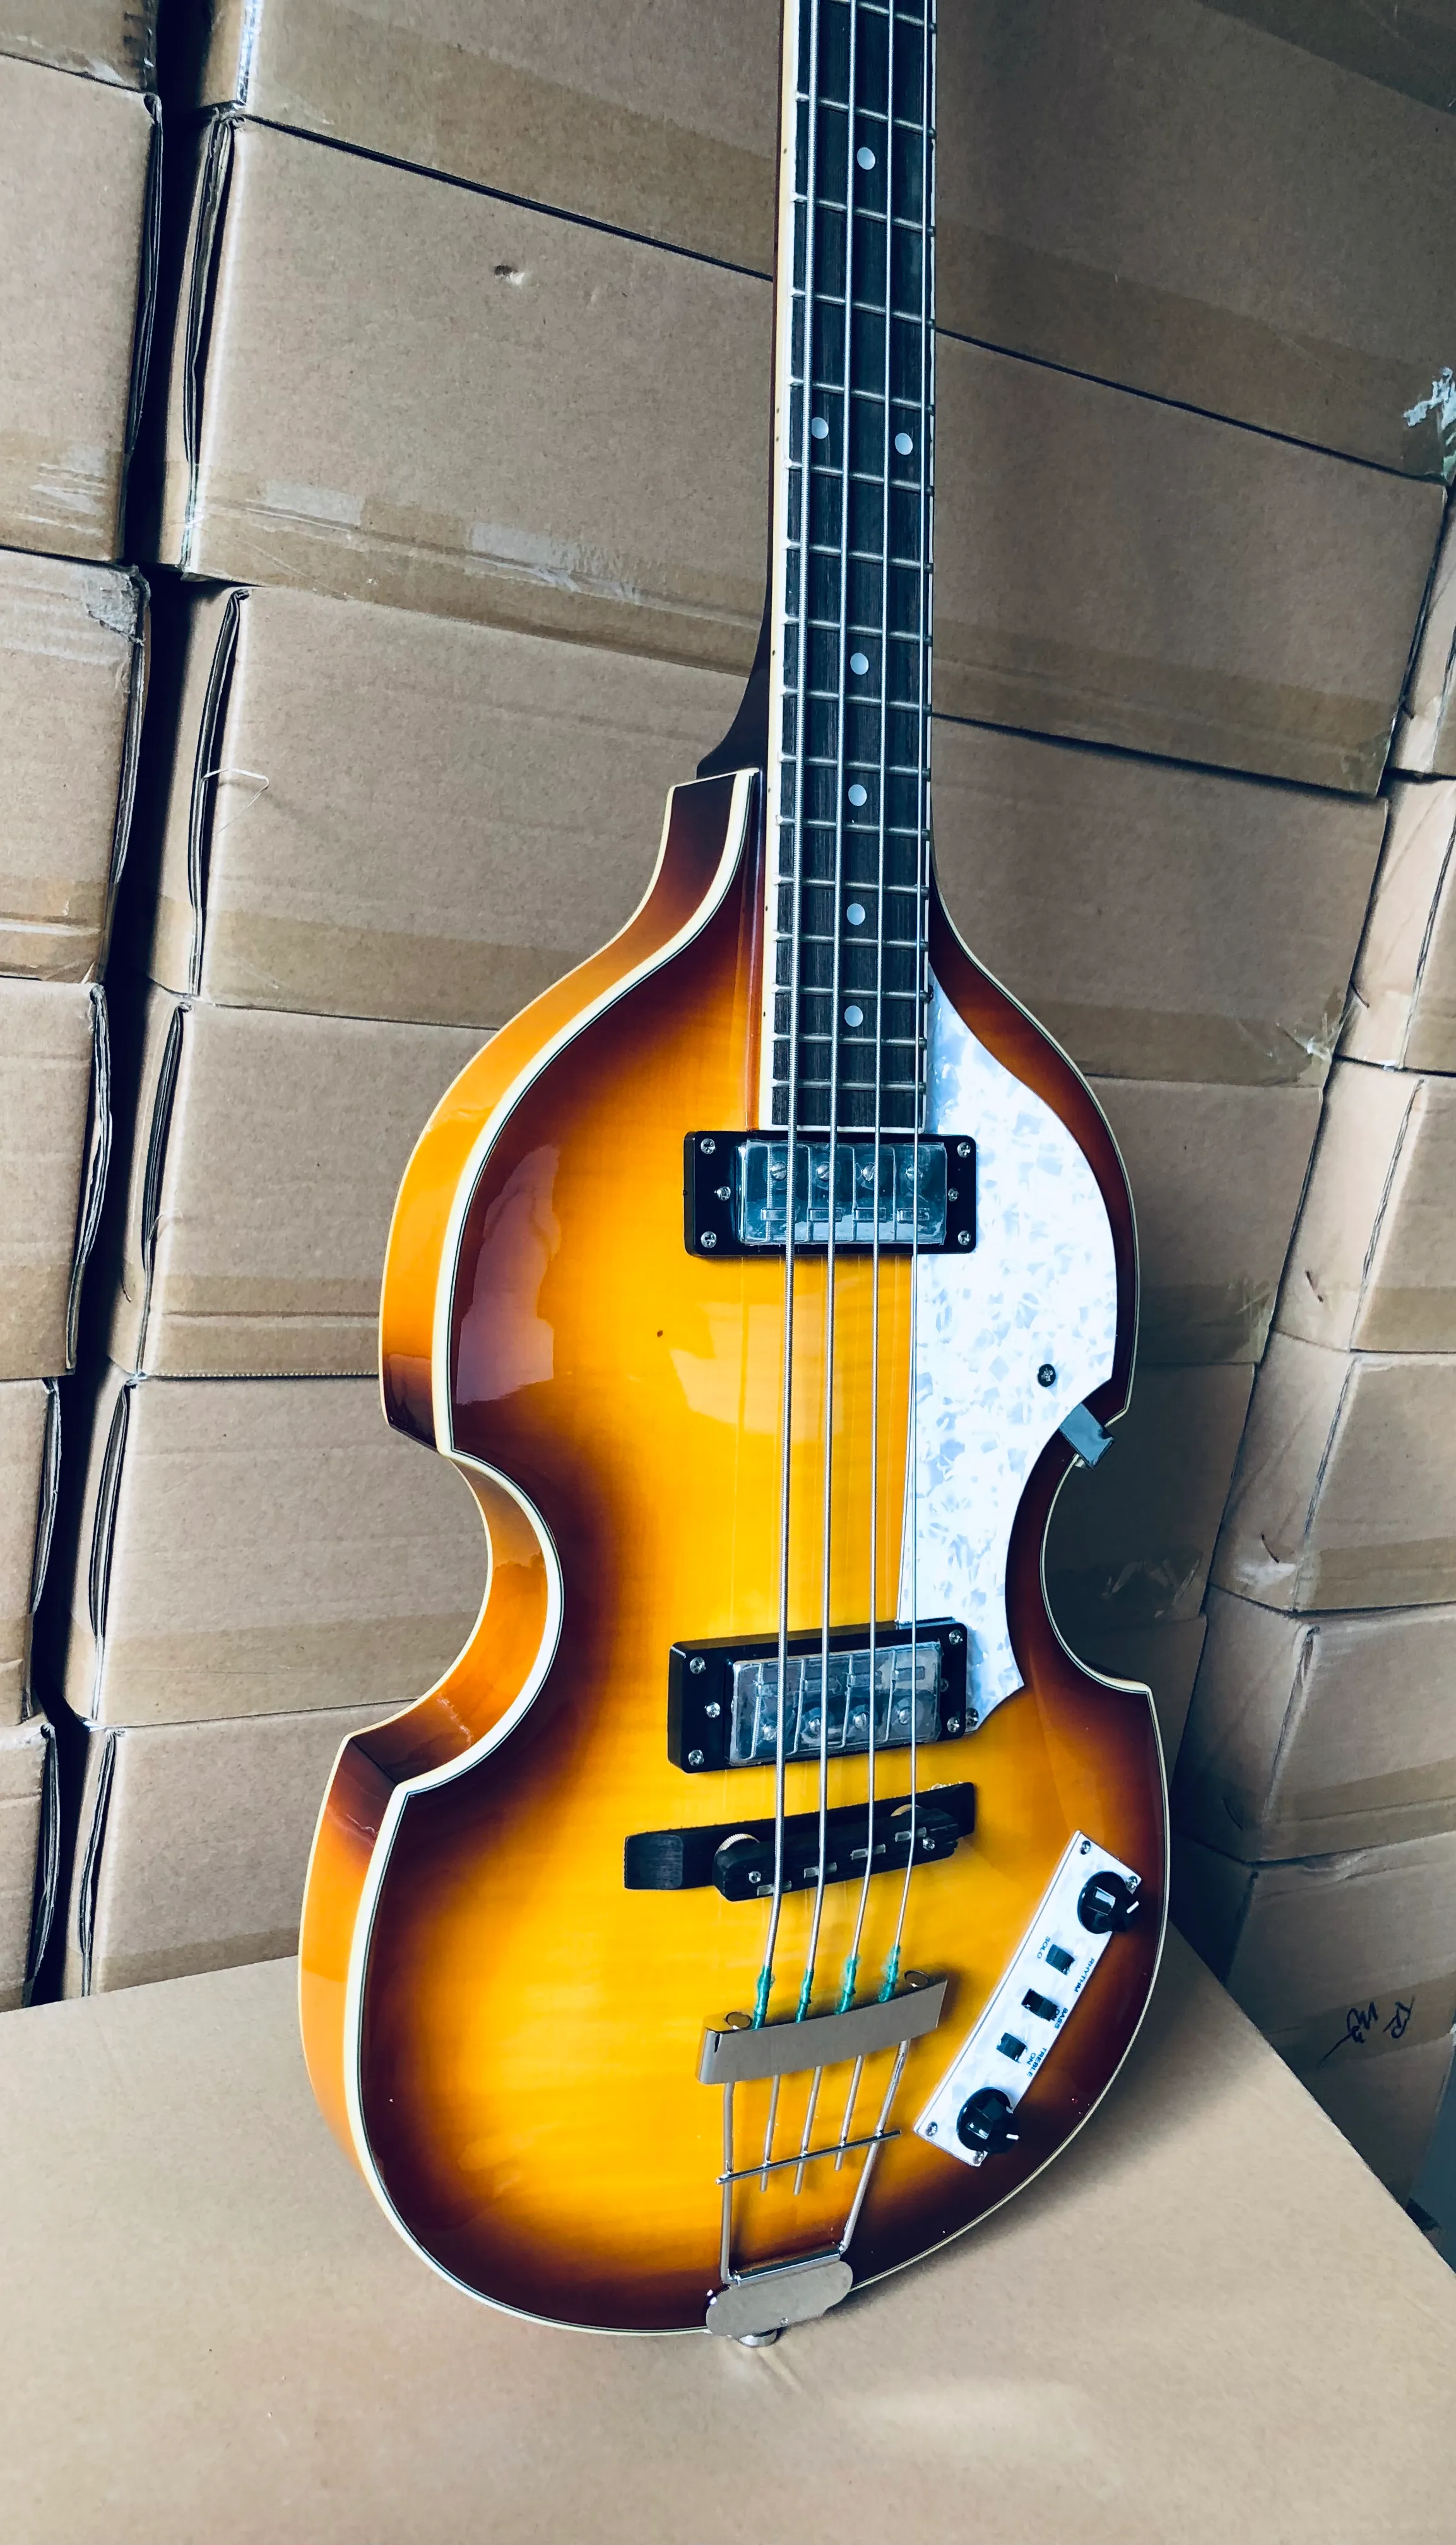 McCartney Hofner Deluxe Sunburst 4 corde violino basso chitarra elettrica top in acero fiammato, 2 pickup 511B Staple, H500/1-CT Contemporary, meccaniche bianche, battipenna perlato